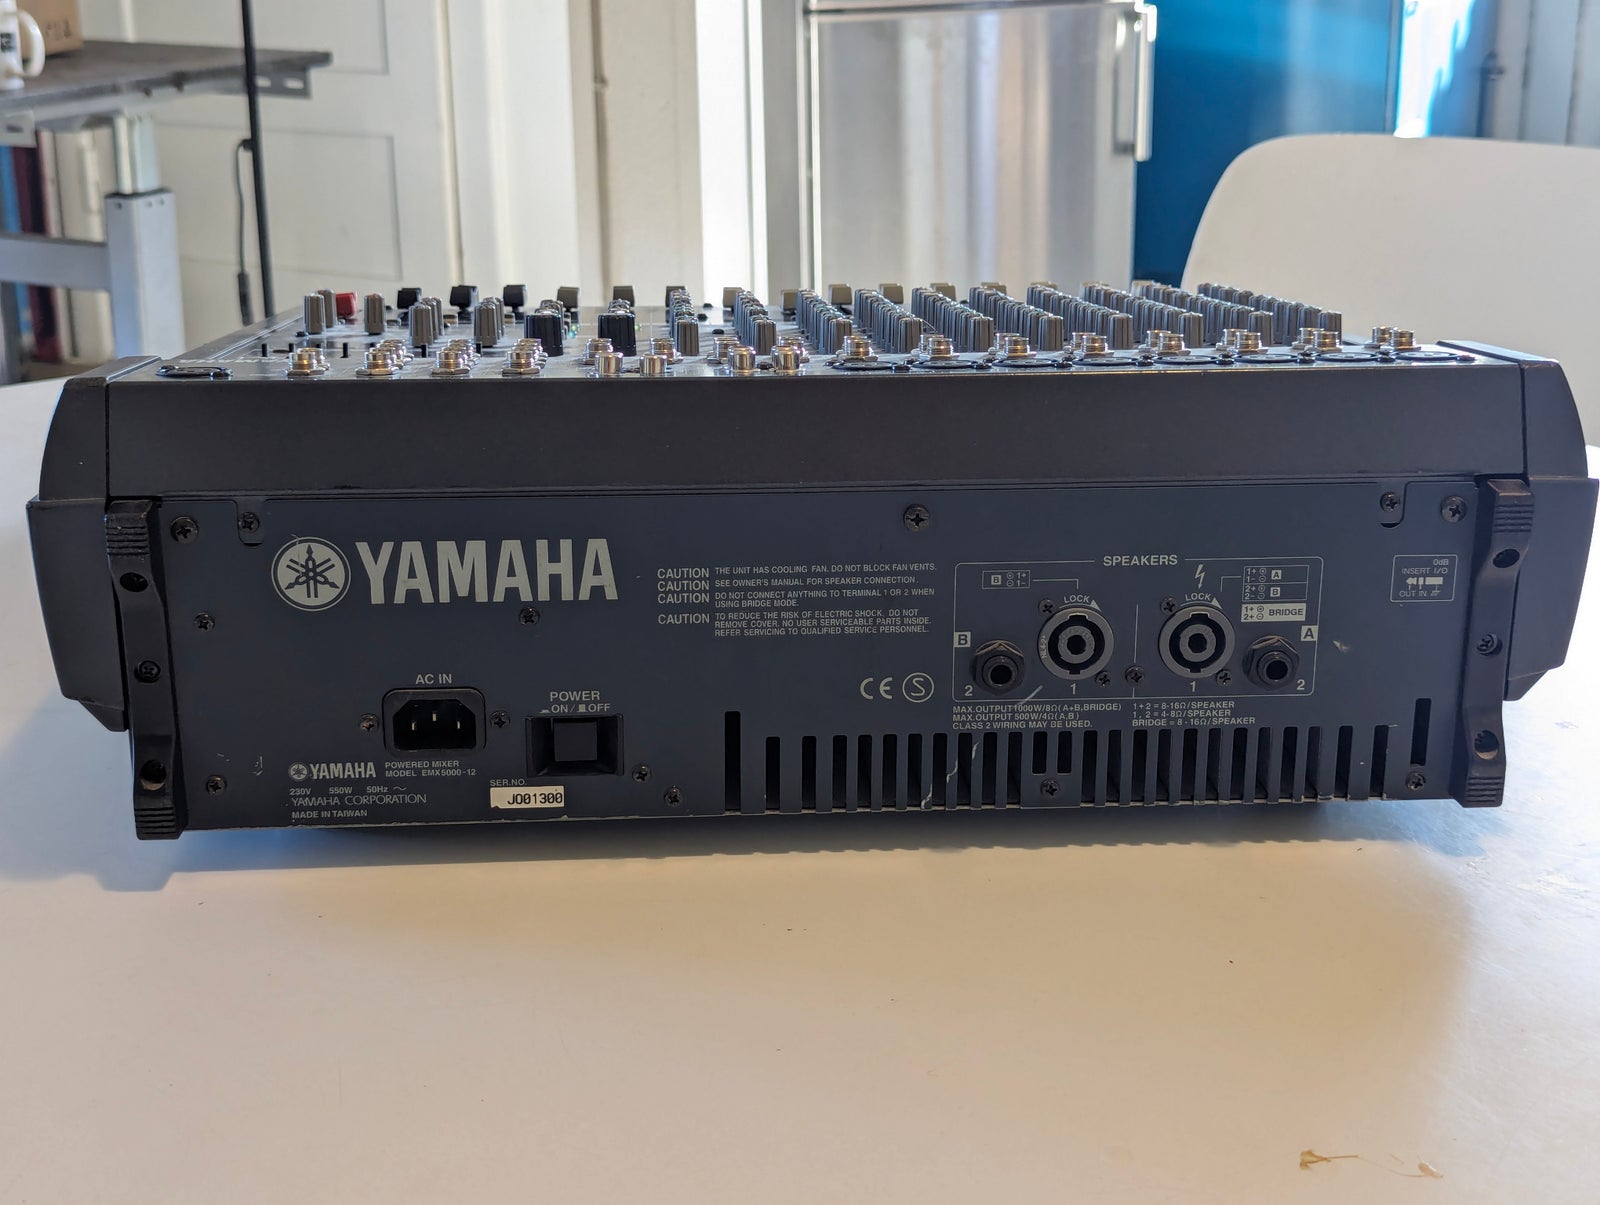 Analog Mixer (med inkl forsærker), Yamaha EMX 5000